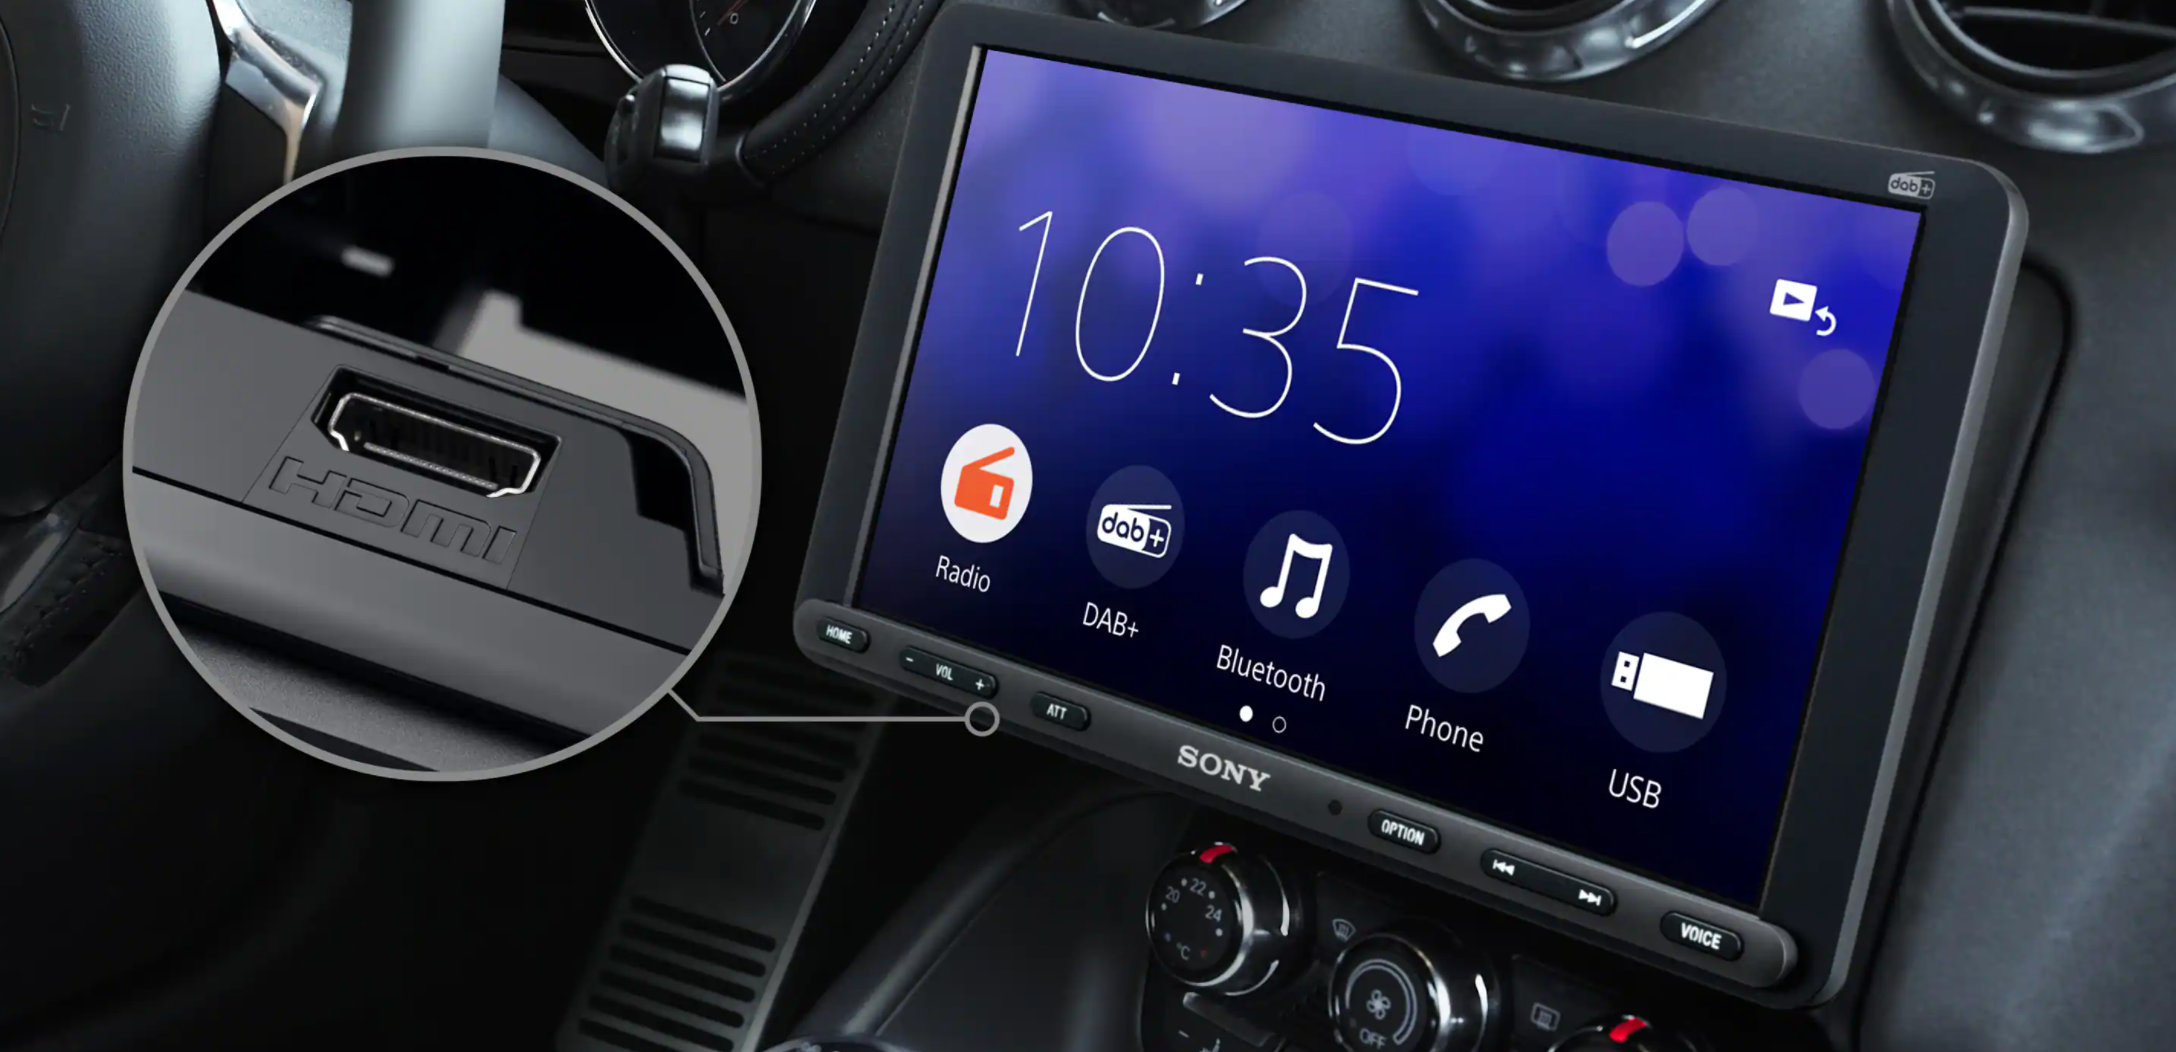 Sony XAV-AX8150ANT (8.95'') DAB Radio with Apple CarPlay & Android Auto